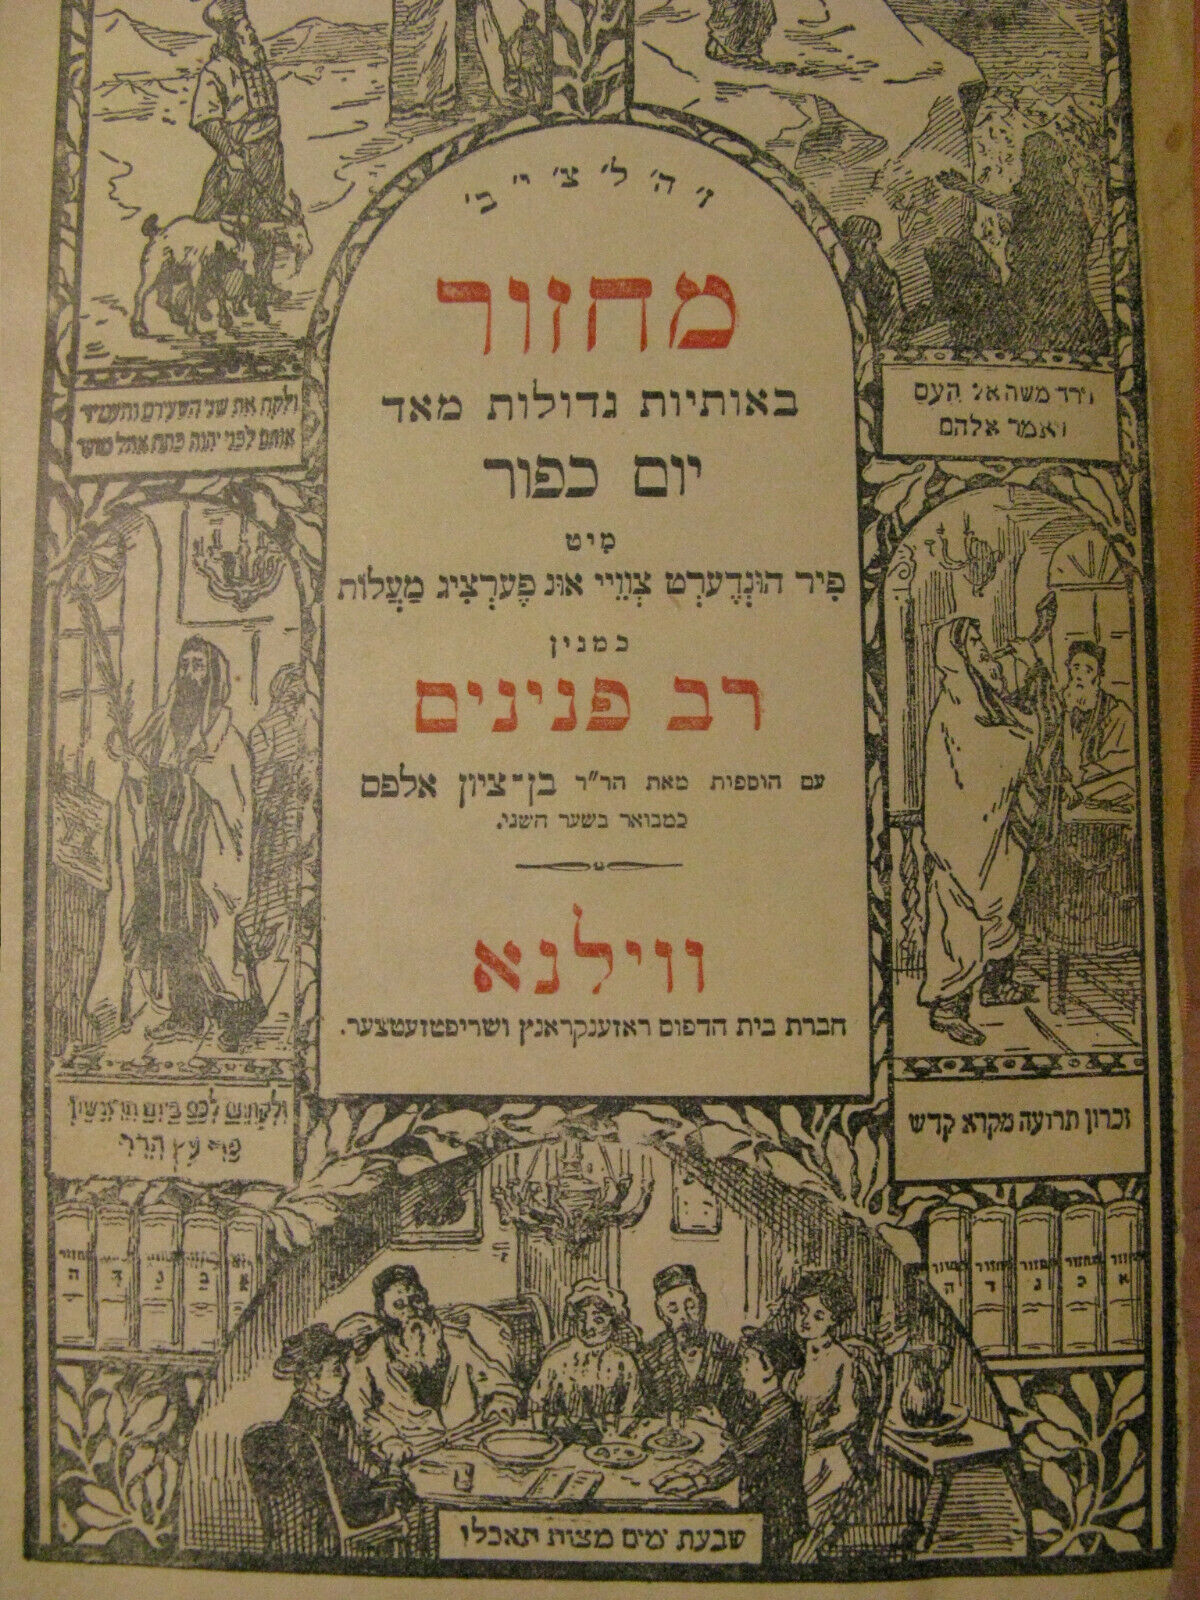 1926 Illustrated Vilna Machzor Yom Kippur Rav Peninim In Yiddish Wood Cuts